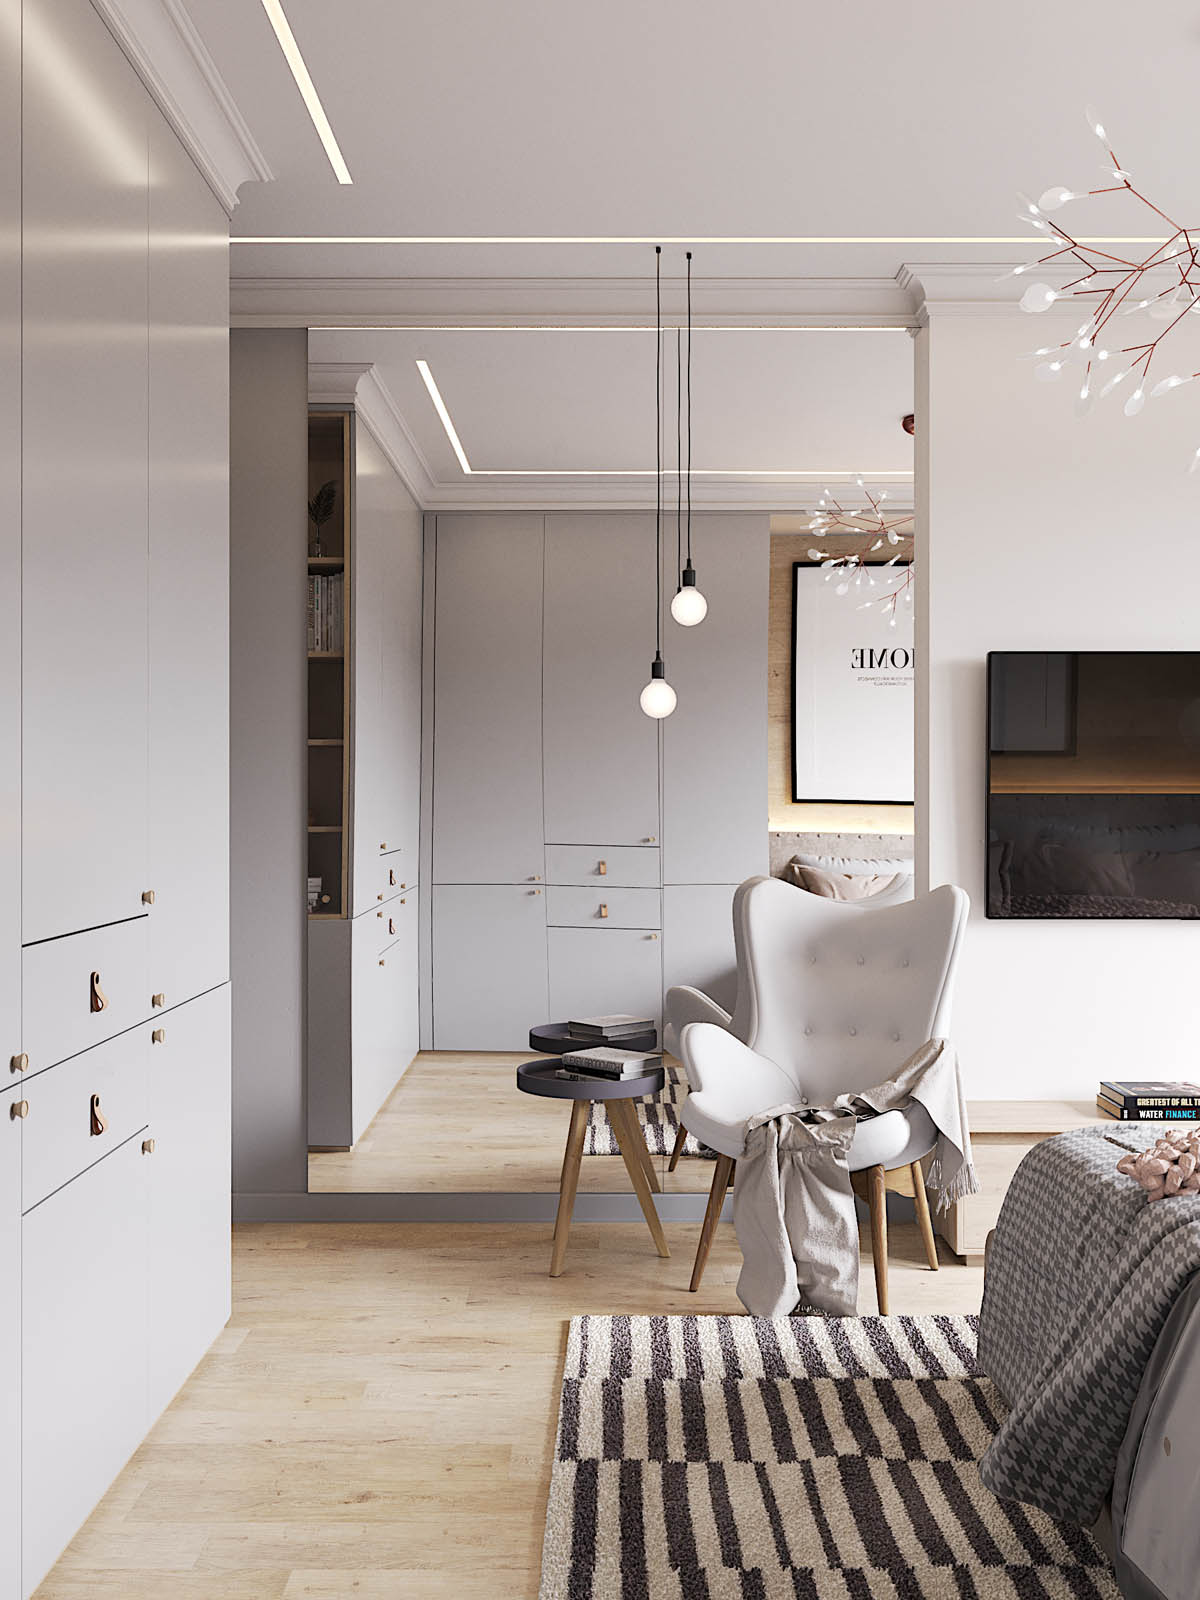 平静而柔和的色调 散发着优雅的精致北欧风格公寓设计